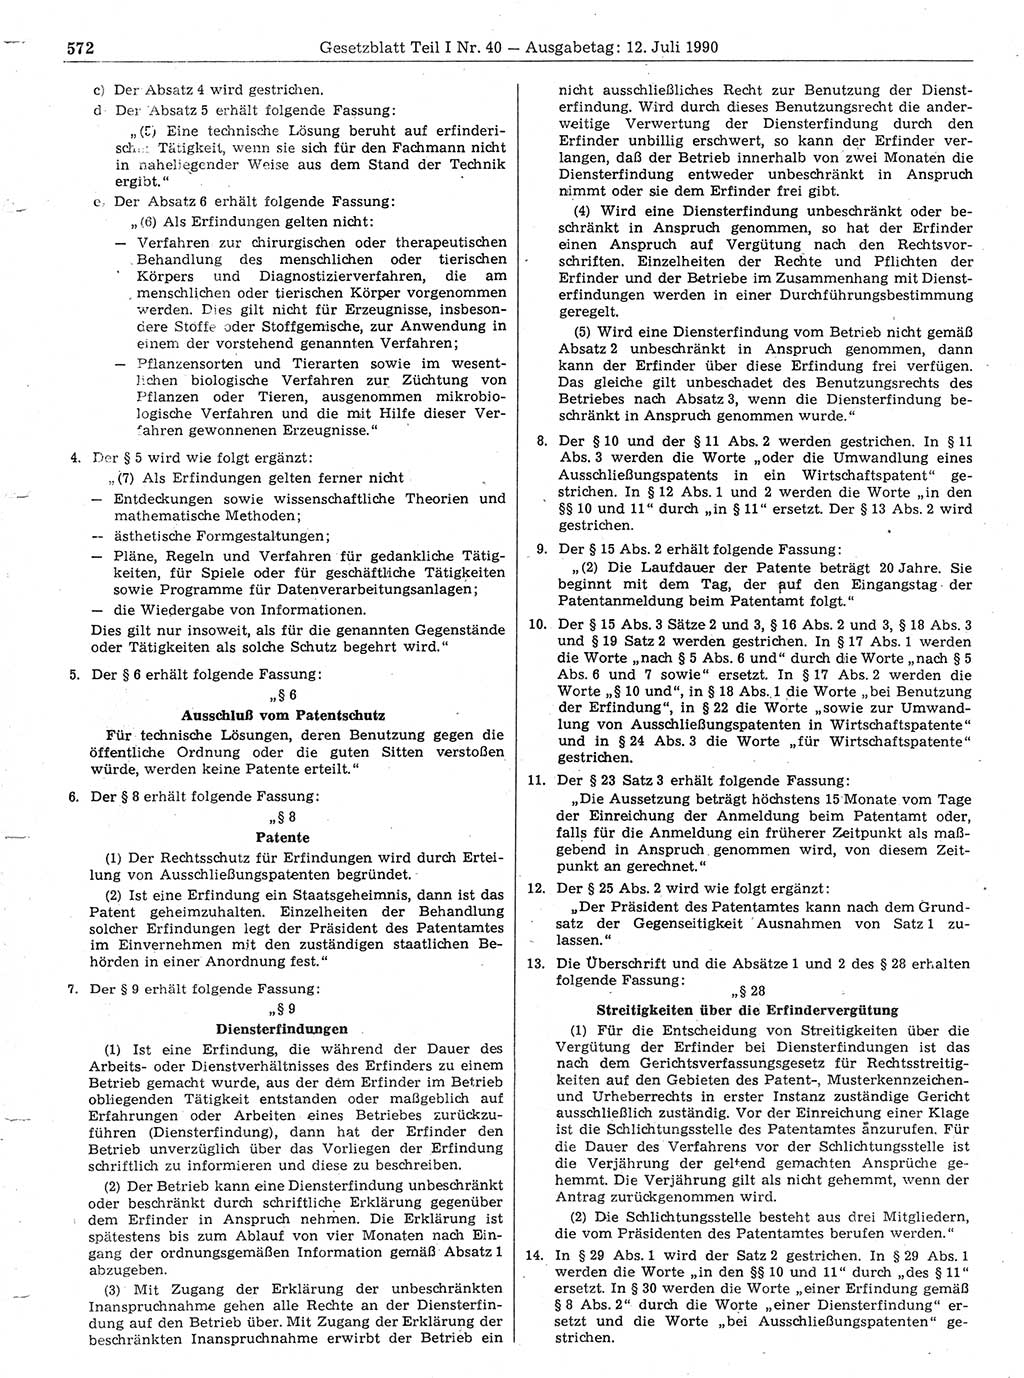 Gesetzblatt (GBl.) der Deutschen Demokratischen Republik (DDR) Teil Ⅰ 1990, Seite 572 (GBl. DDR Ⅰ 1990, S. 572)